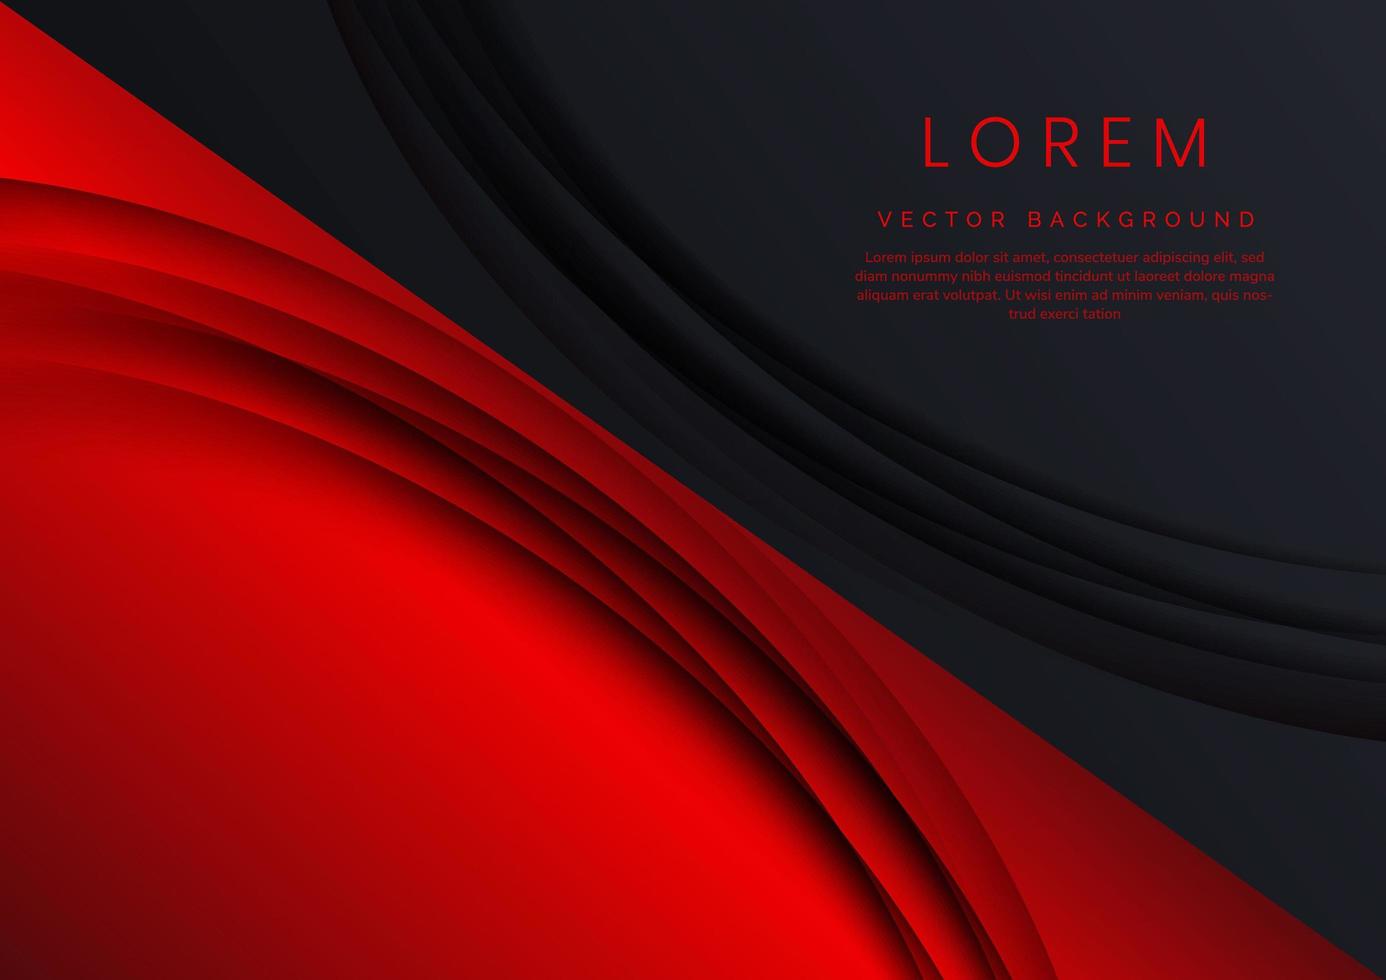 plantilla banner corporativo concepto contraste rojo y negro curvado fondo de forma superpuesta. vector